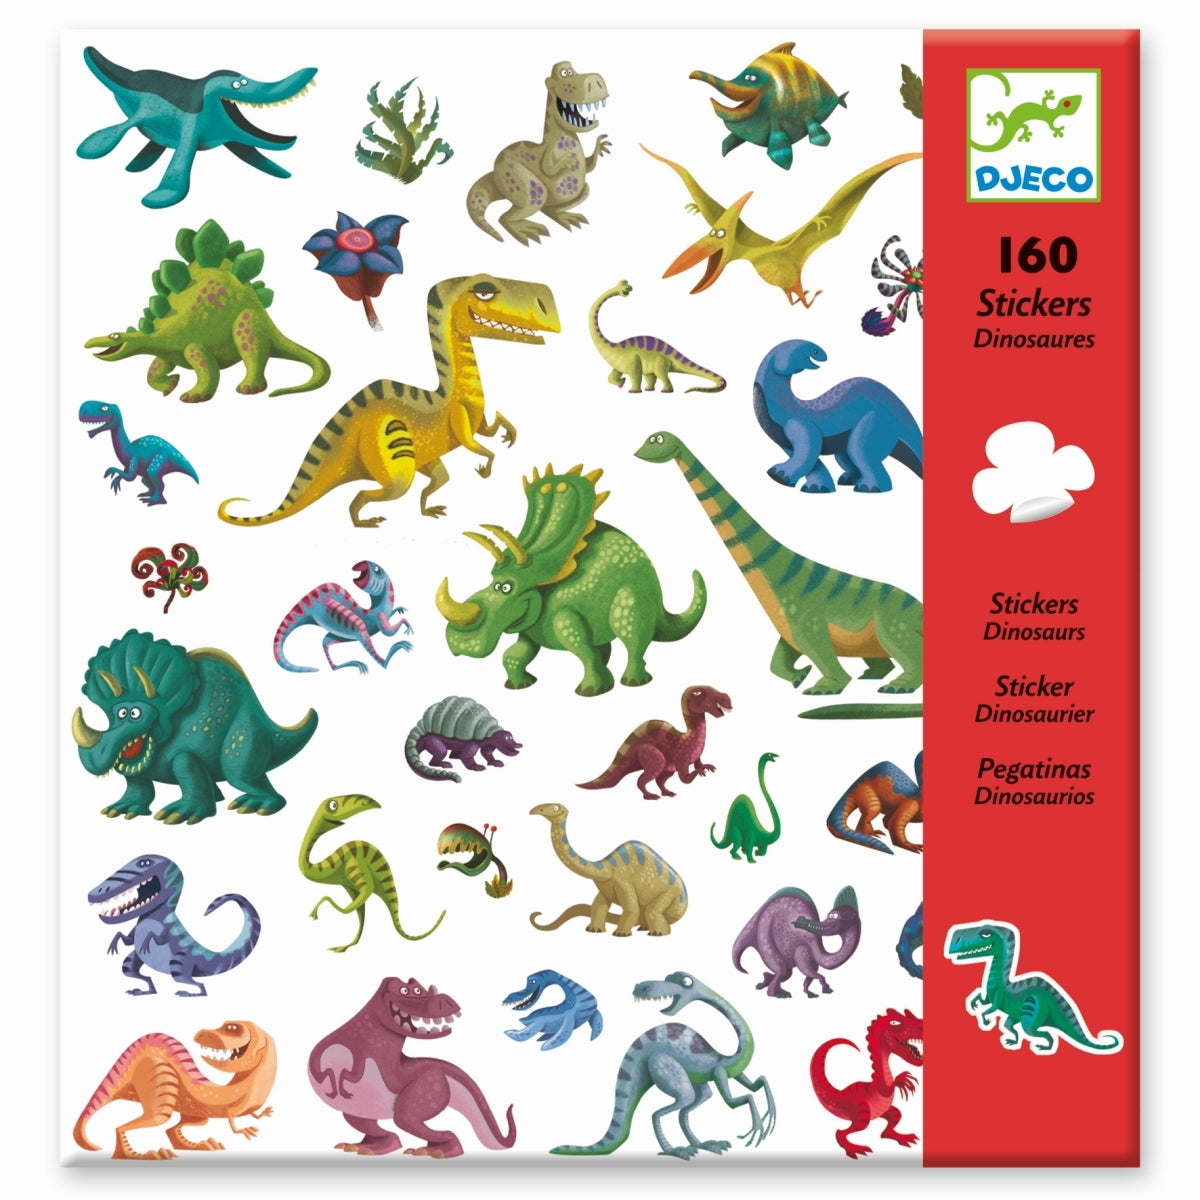 Ein Set mit 160 Stickern zum faszinierenden Thema Dinosaurier. Triceratops, Diplodocus, Tyrannosaurus, Stegosaurus uvm. Alle sind mit dabei! Das Kind klebt die zahlreichen Sticker nach Wunsch auf und erschafft eigene Sketche oder nutzt sie als Dekoration für andere Objekte.